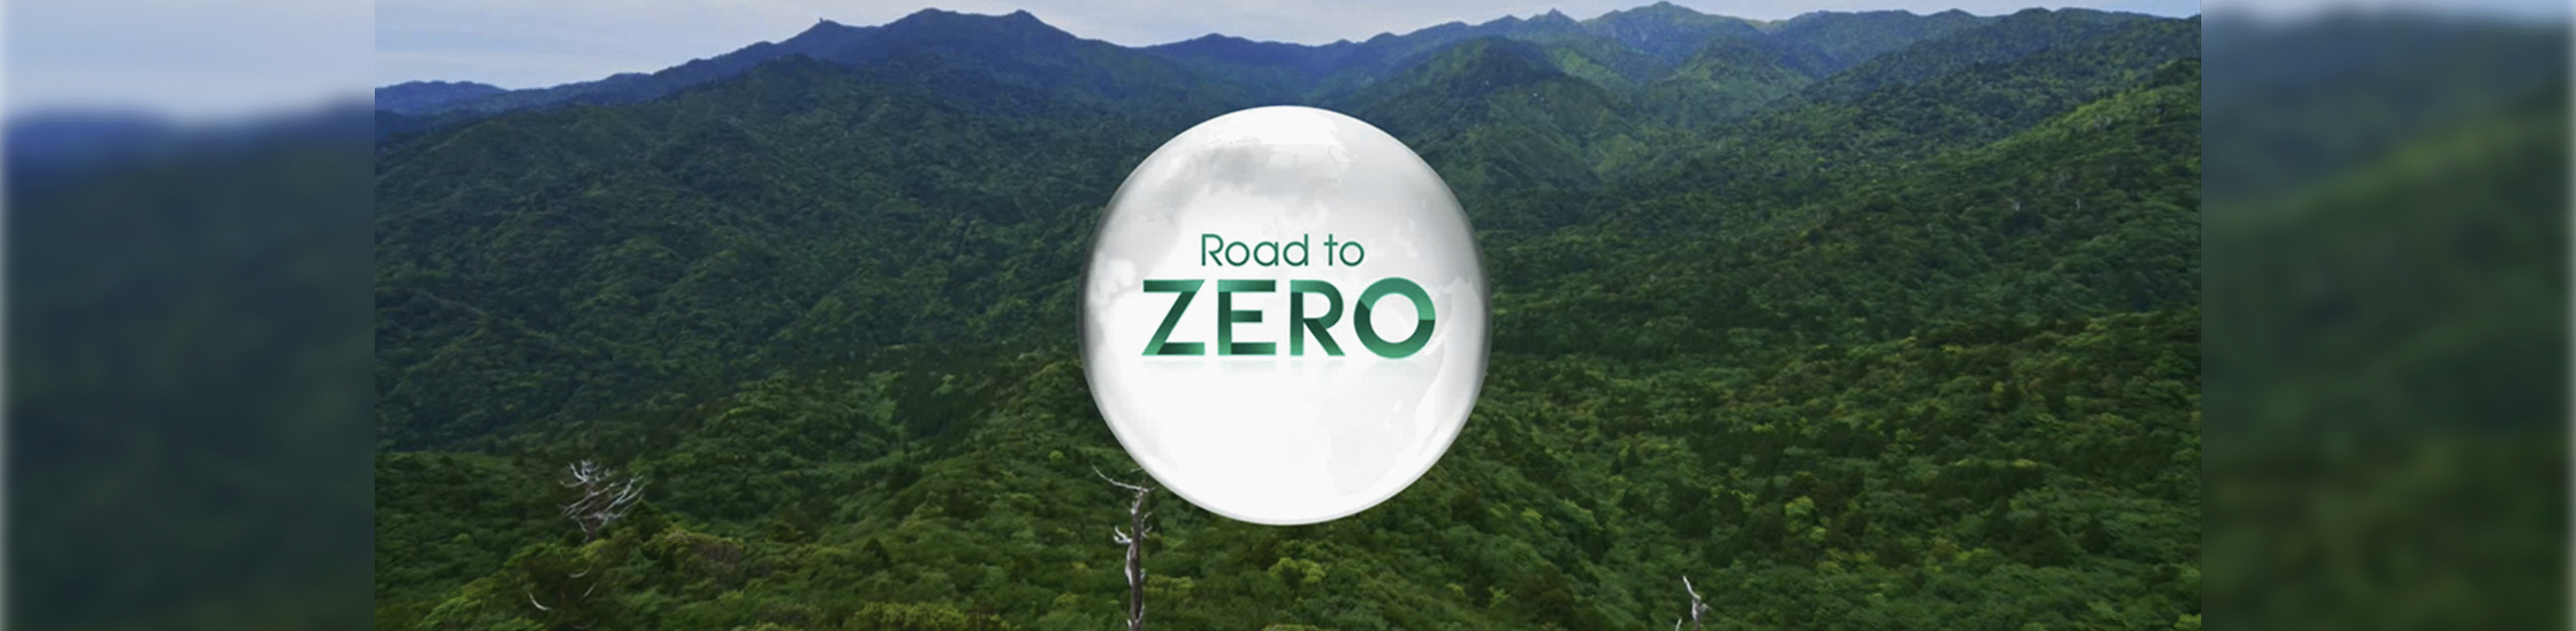 Road to Zero-logo